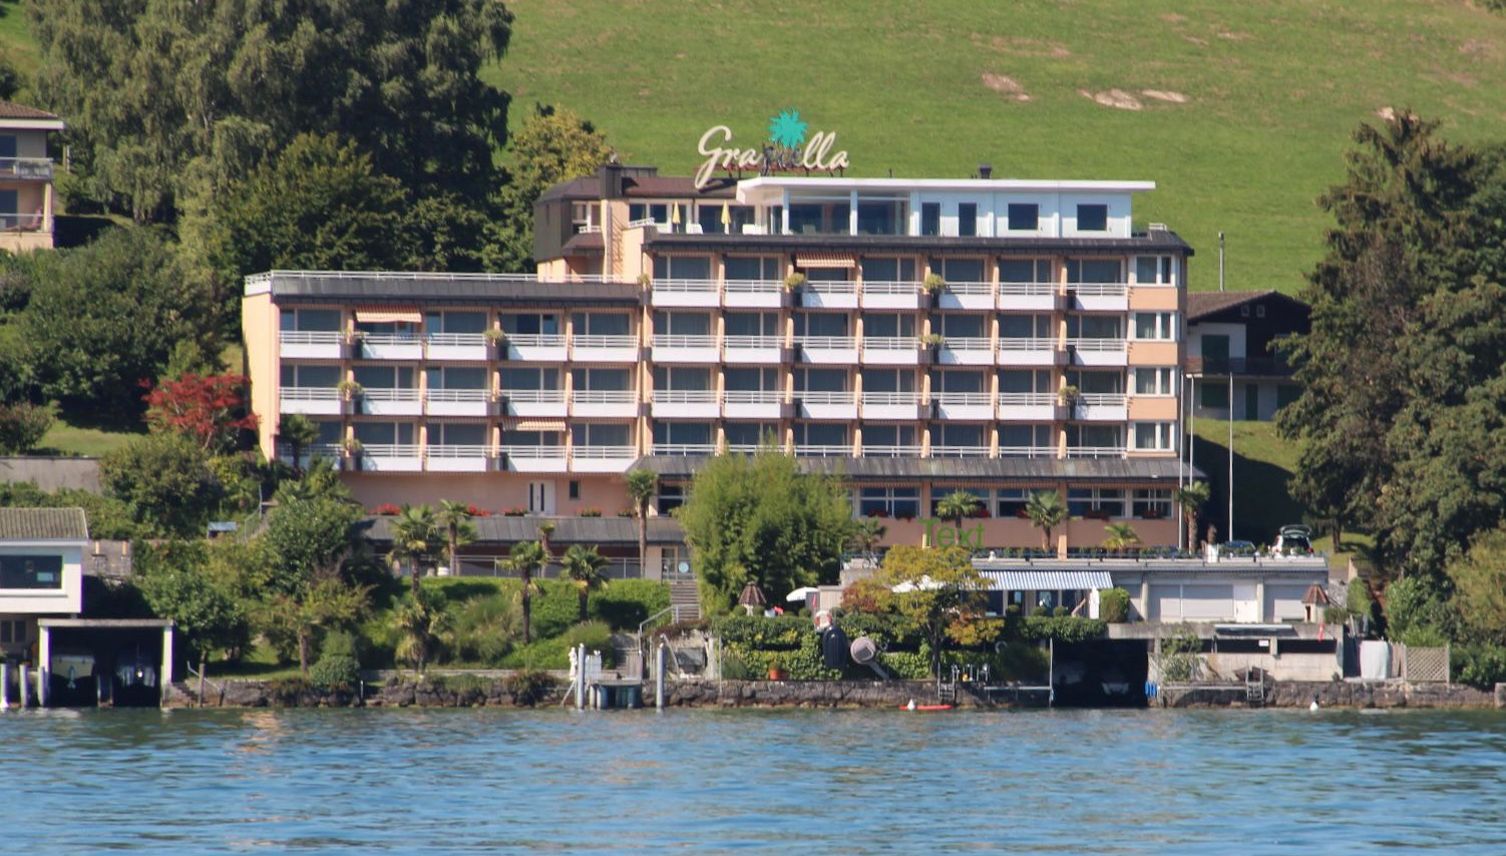 Dieses Hotel am Vierwaldstättersee erhält einen Neustart